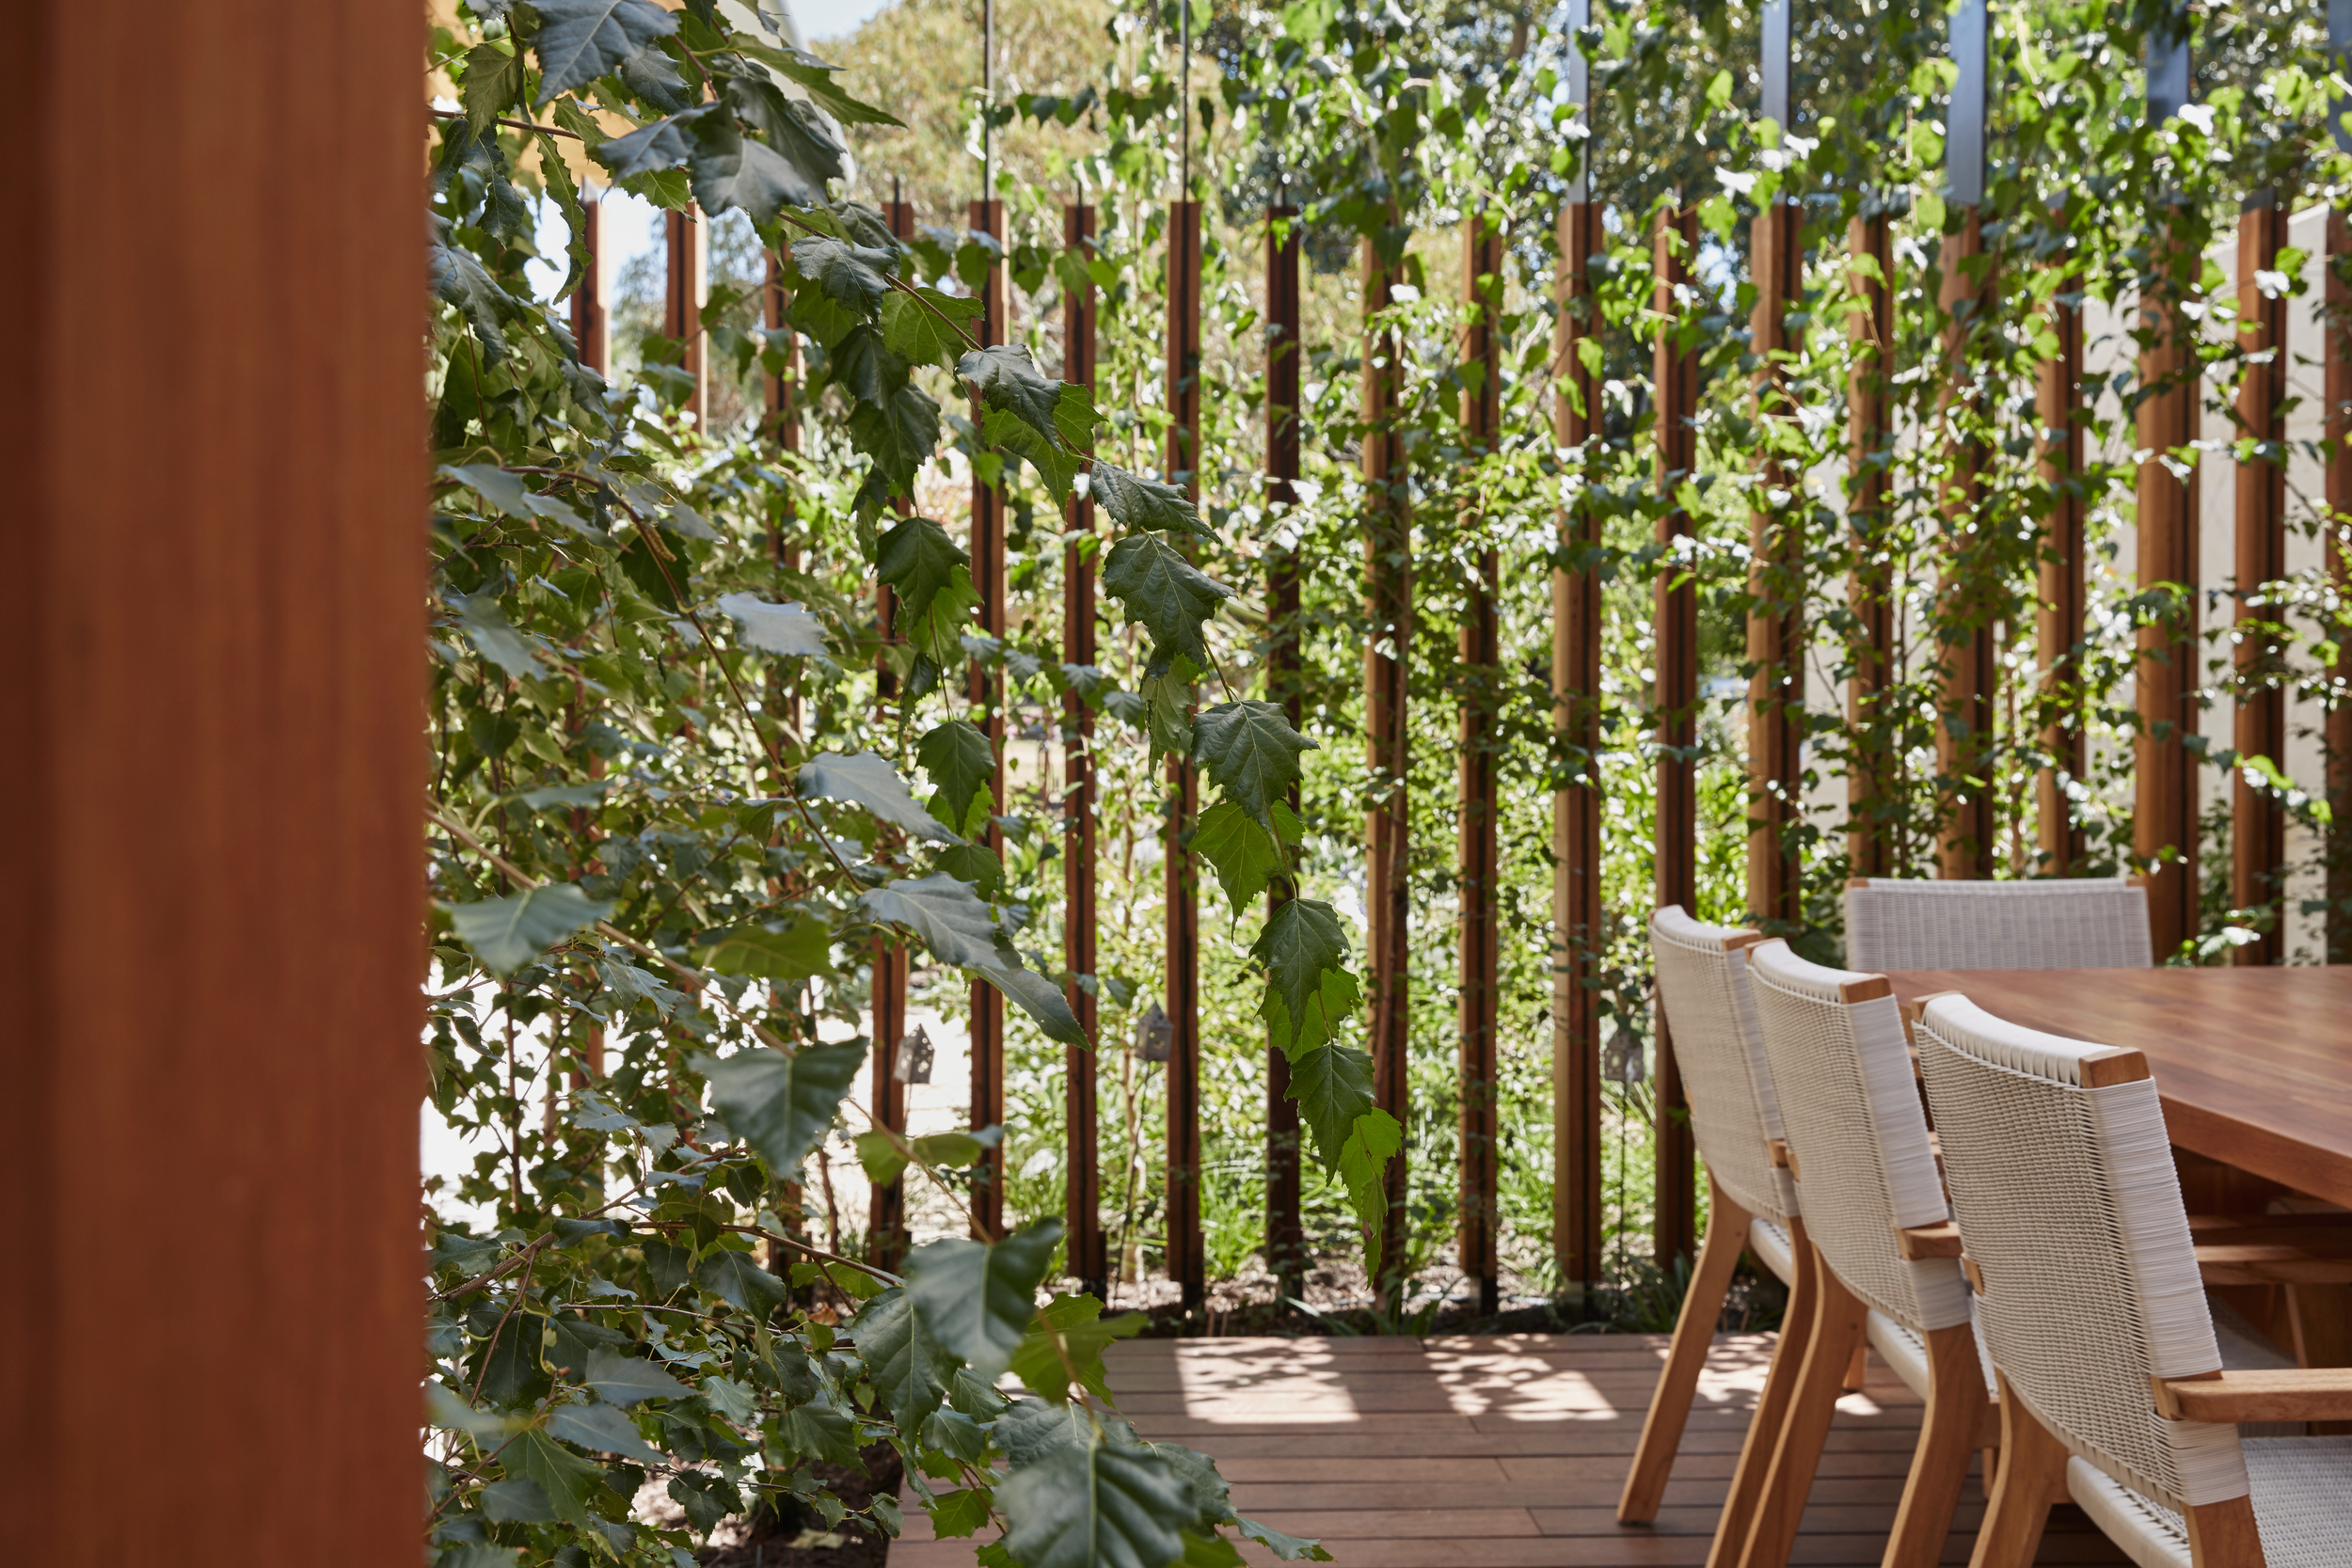 Subiaco-Residence-Perth-Courtyard-Garden-Design-Seedesign-Studio